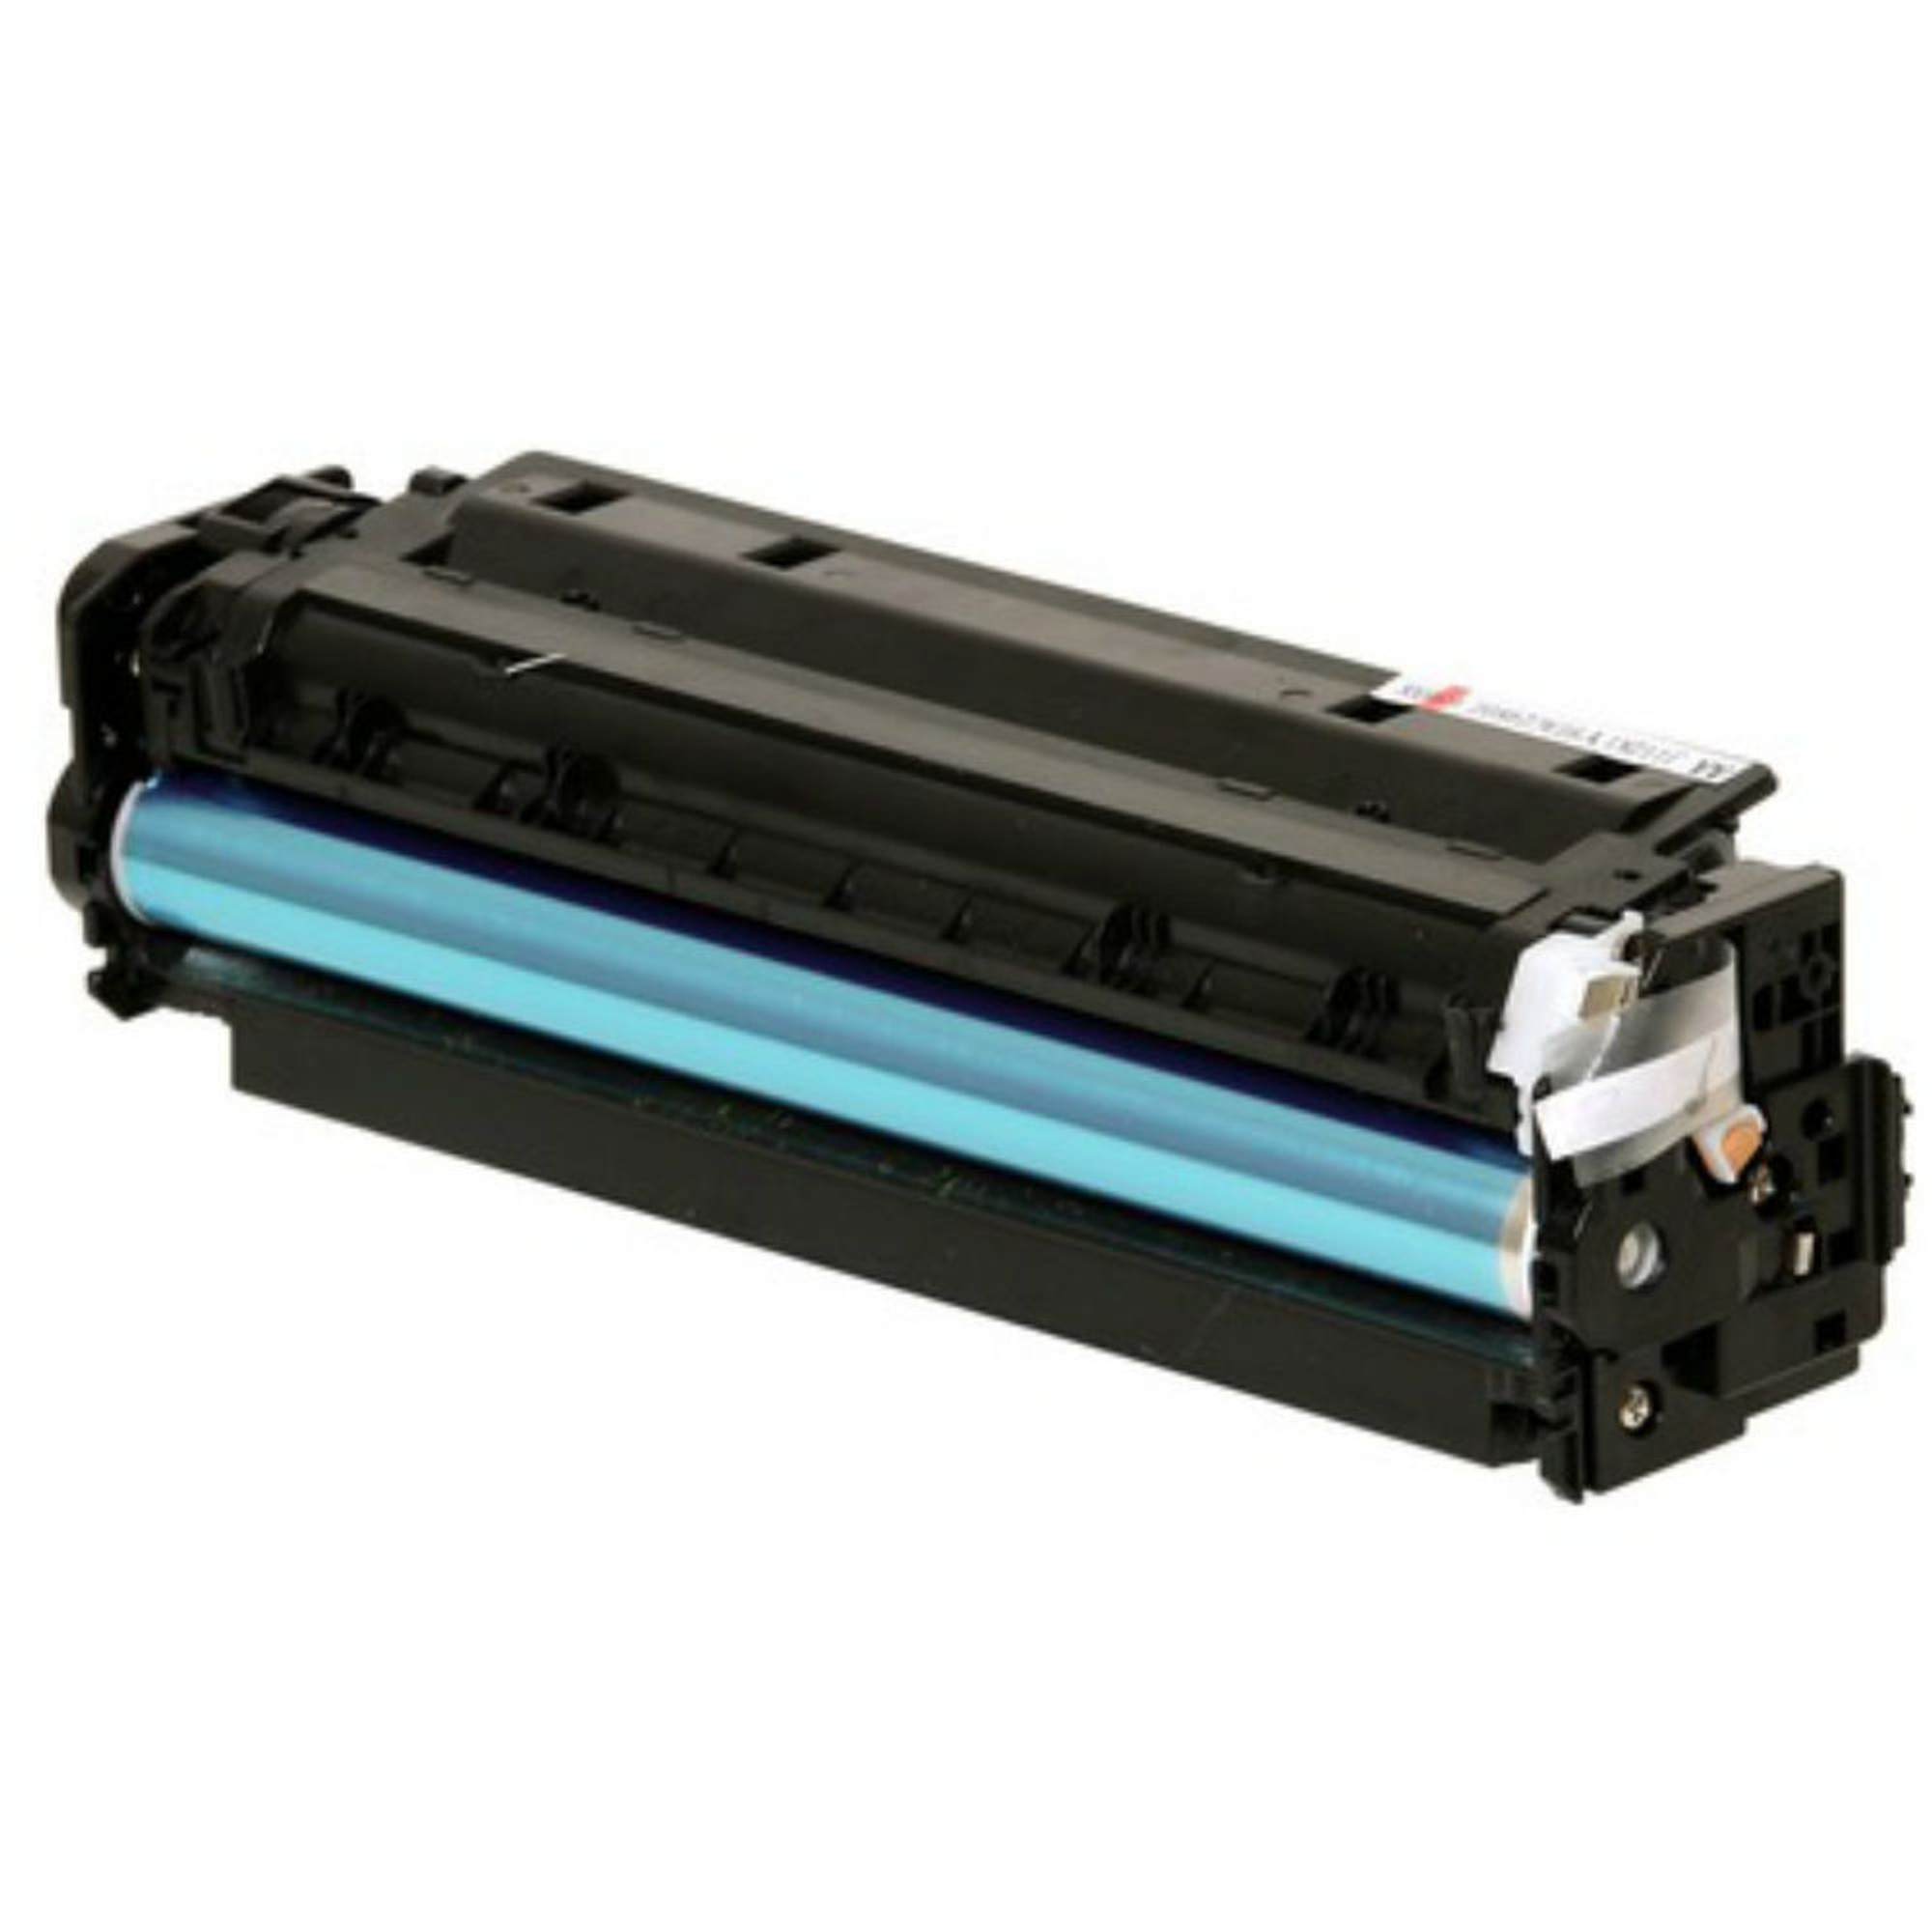 Gemaakt van schroot Ontaarden Magenta Toner for HP Color LaserJet Pro 300 M351/M375, 400 M451, M475DN,  M475DW Printer